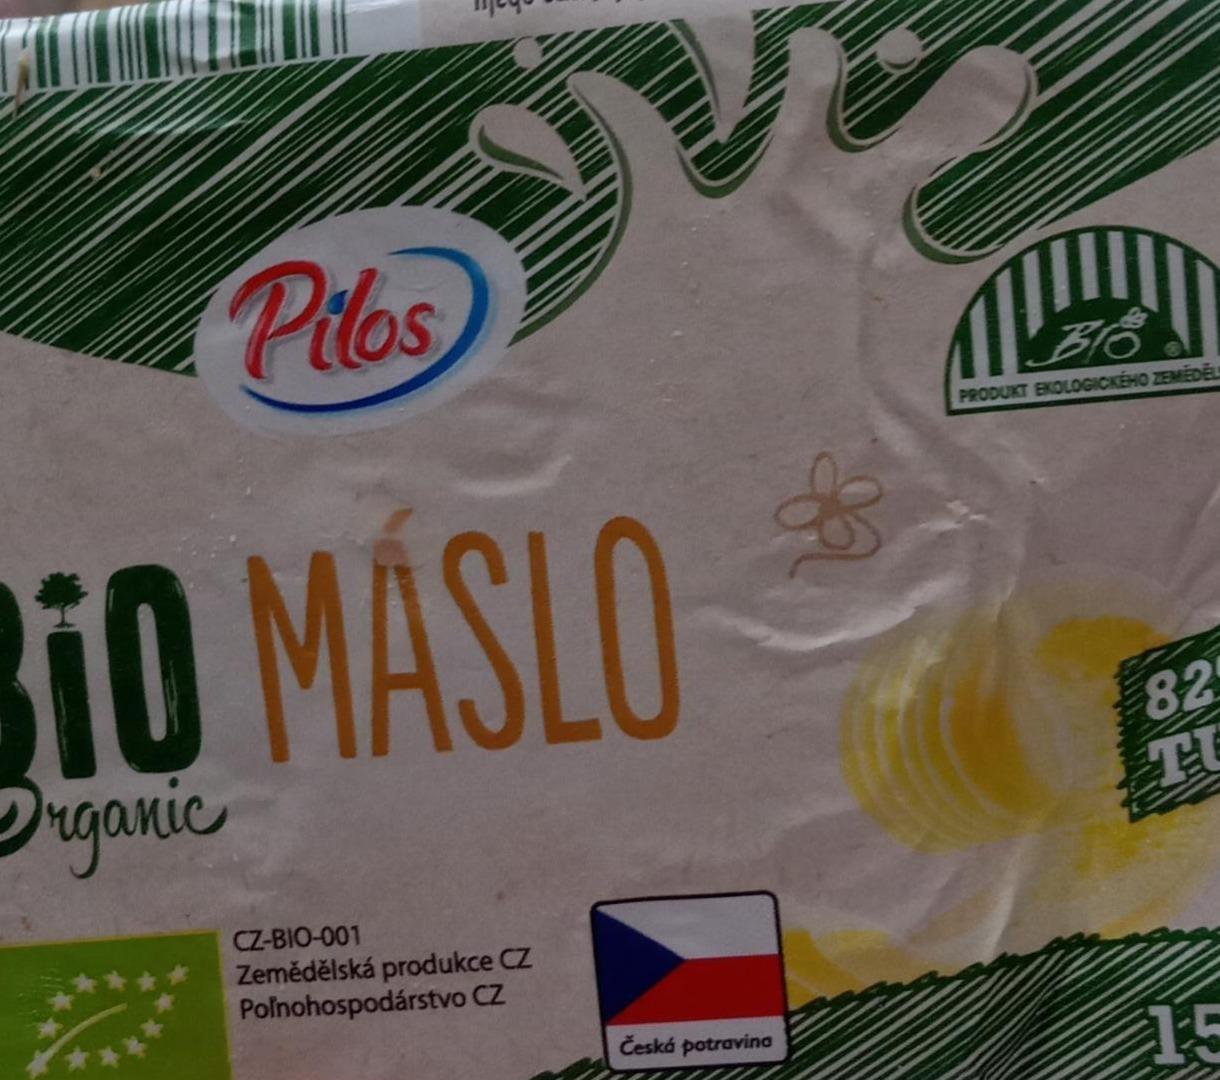 Fotografie - Bio organic máslo 82% Pilos